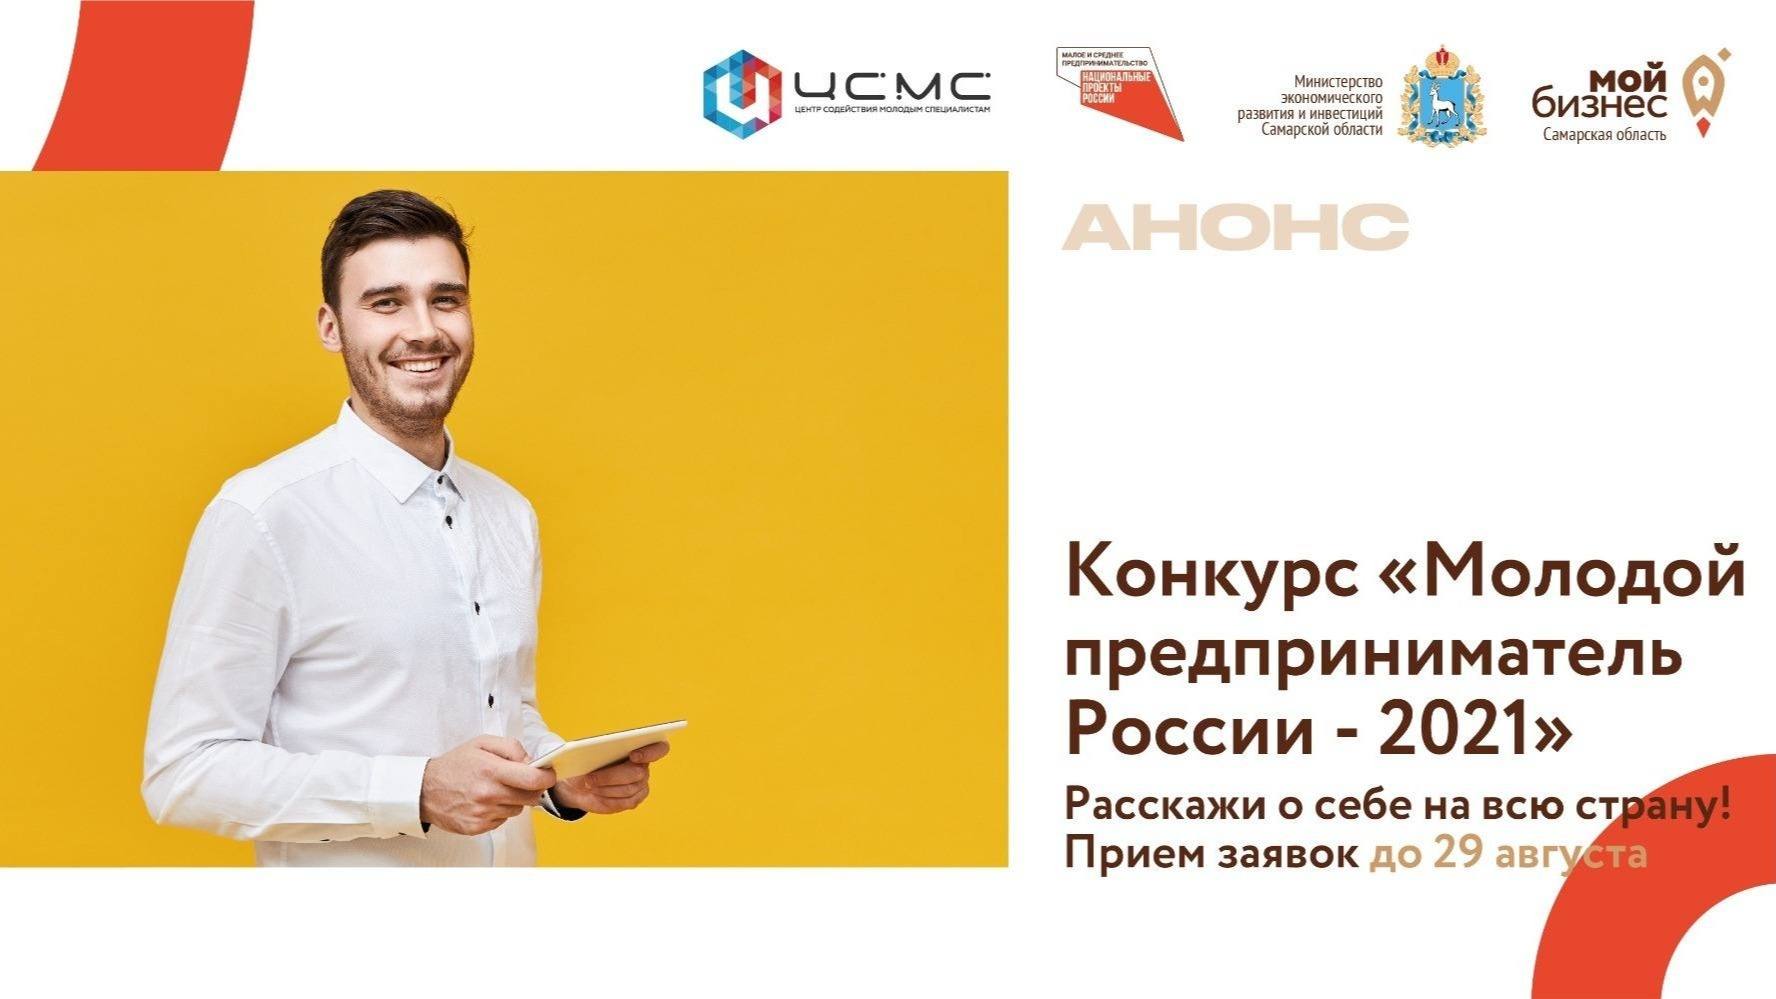 Продолжается прием заявок на участие во Всероссийском конкурсе «Молодой предприниматель России-2021»